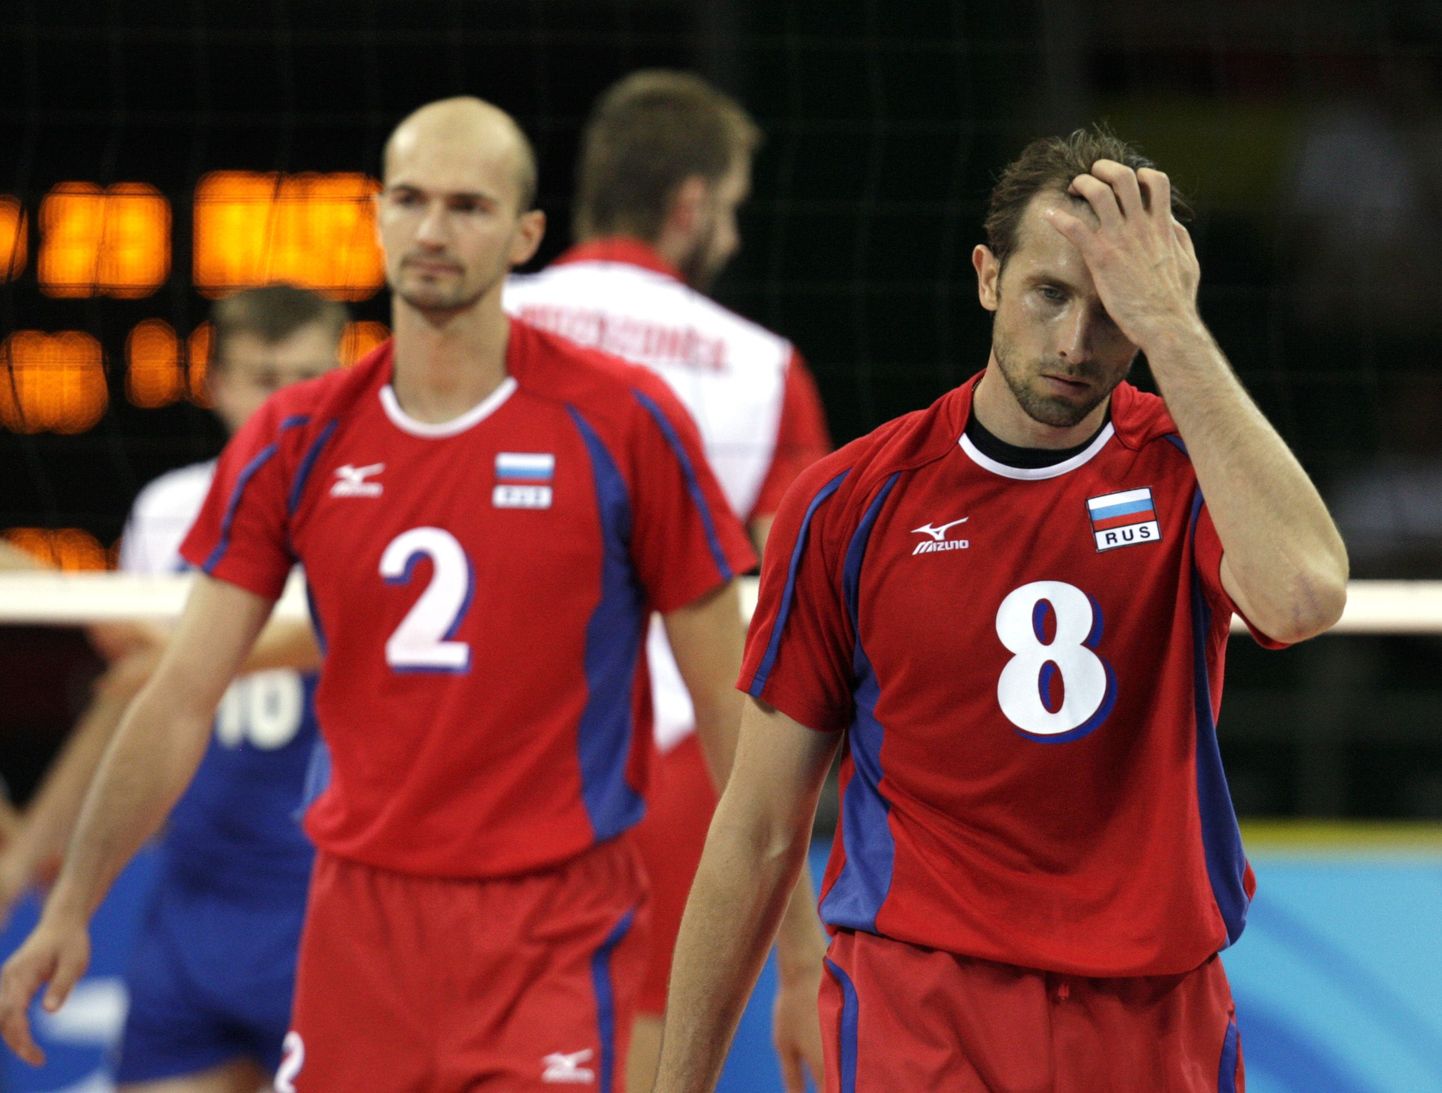 Venemaa koondise võrkpallurid on pärast esimest kaotust selgelt pettunud.